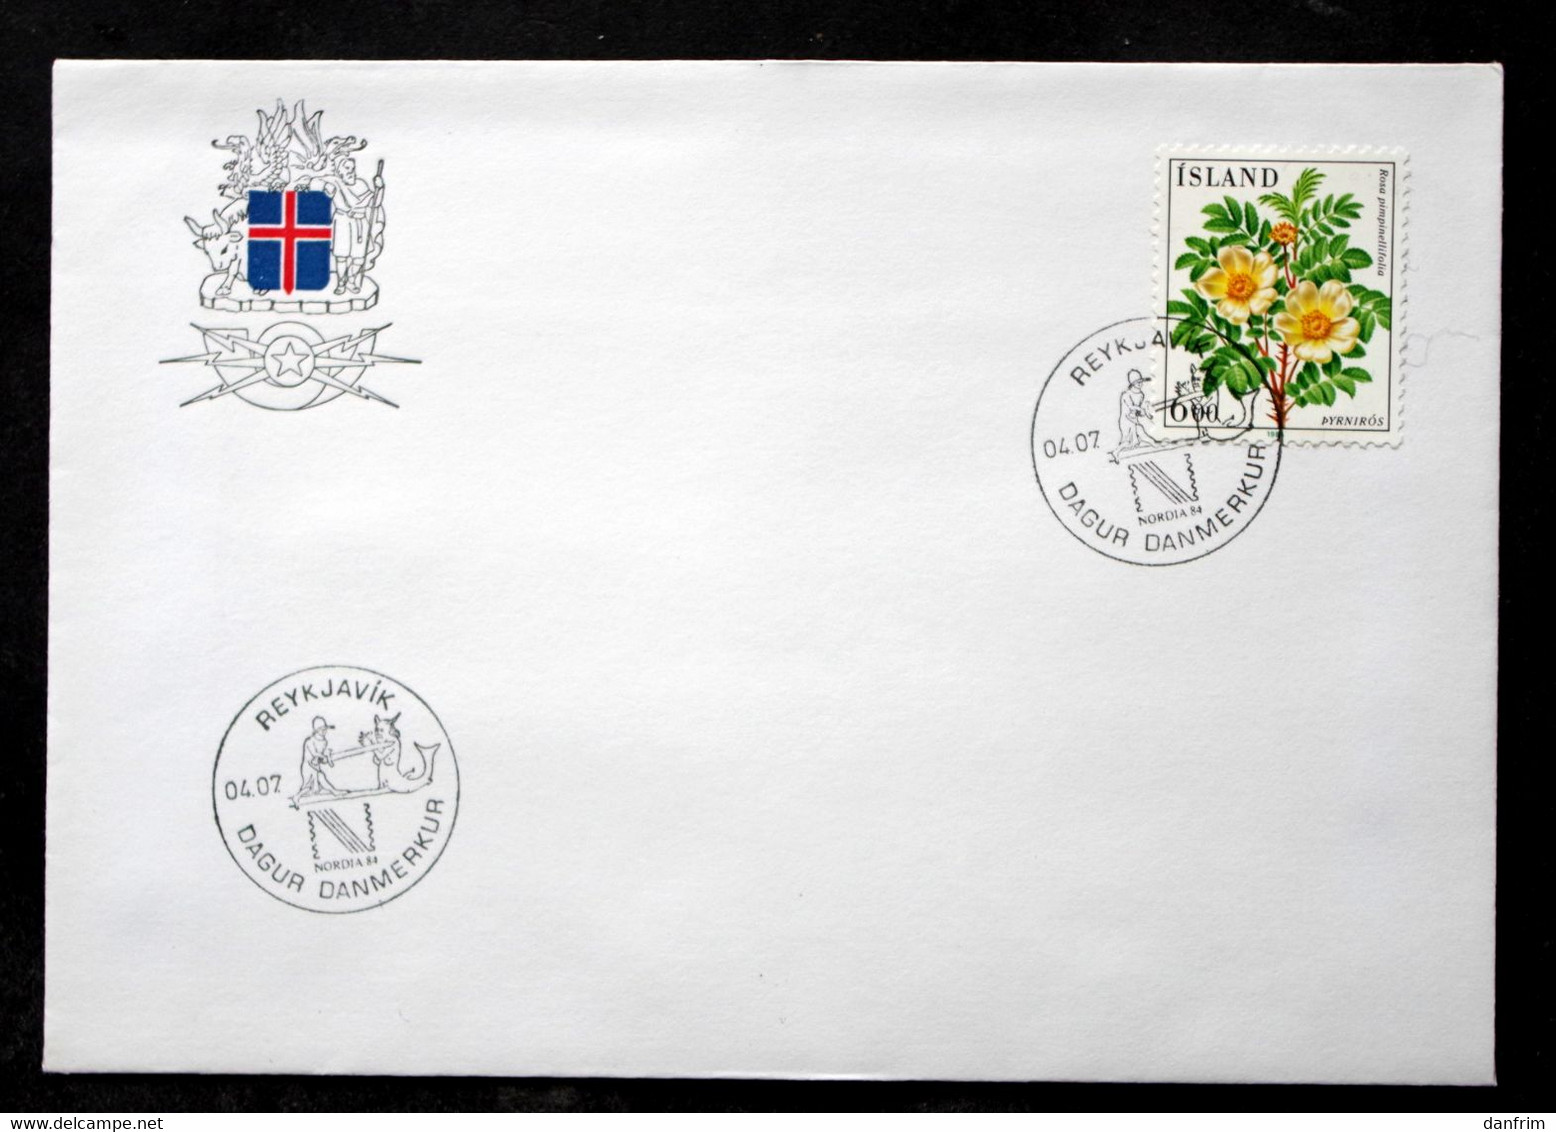 Iceland 1984 Flowers MiNr.612 Special Cancel Cover   ( Lot 6554 ) - Briefe U. Dokumente